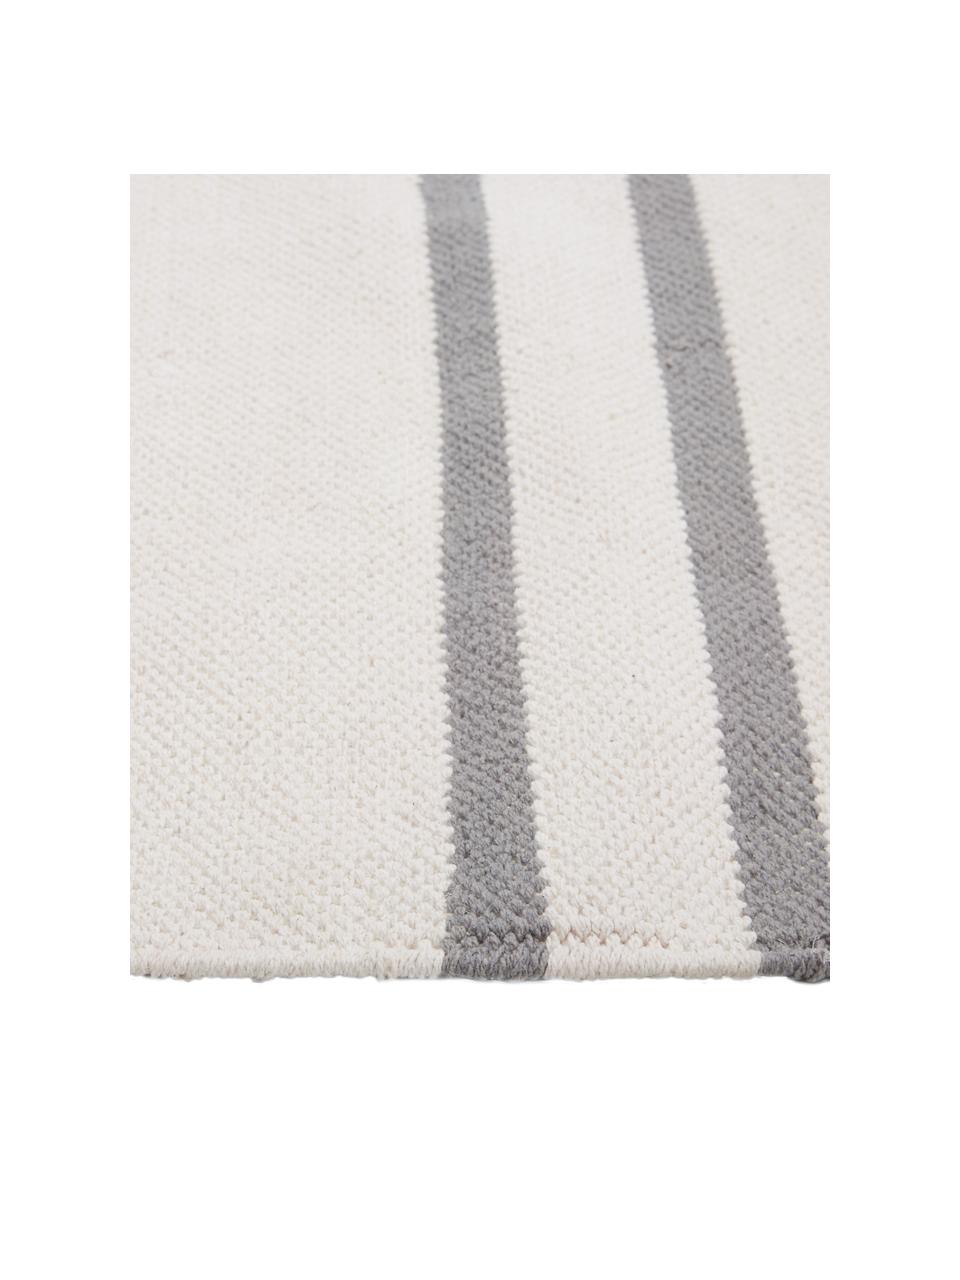 Flachgewebter Baumwollteppich Georgio mit grafischem Muster, 100% Baumwolle, Grau, Beige, Rosa, B 120 x L 180 cm (Grösse S)